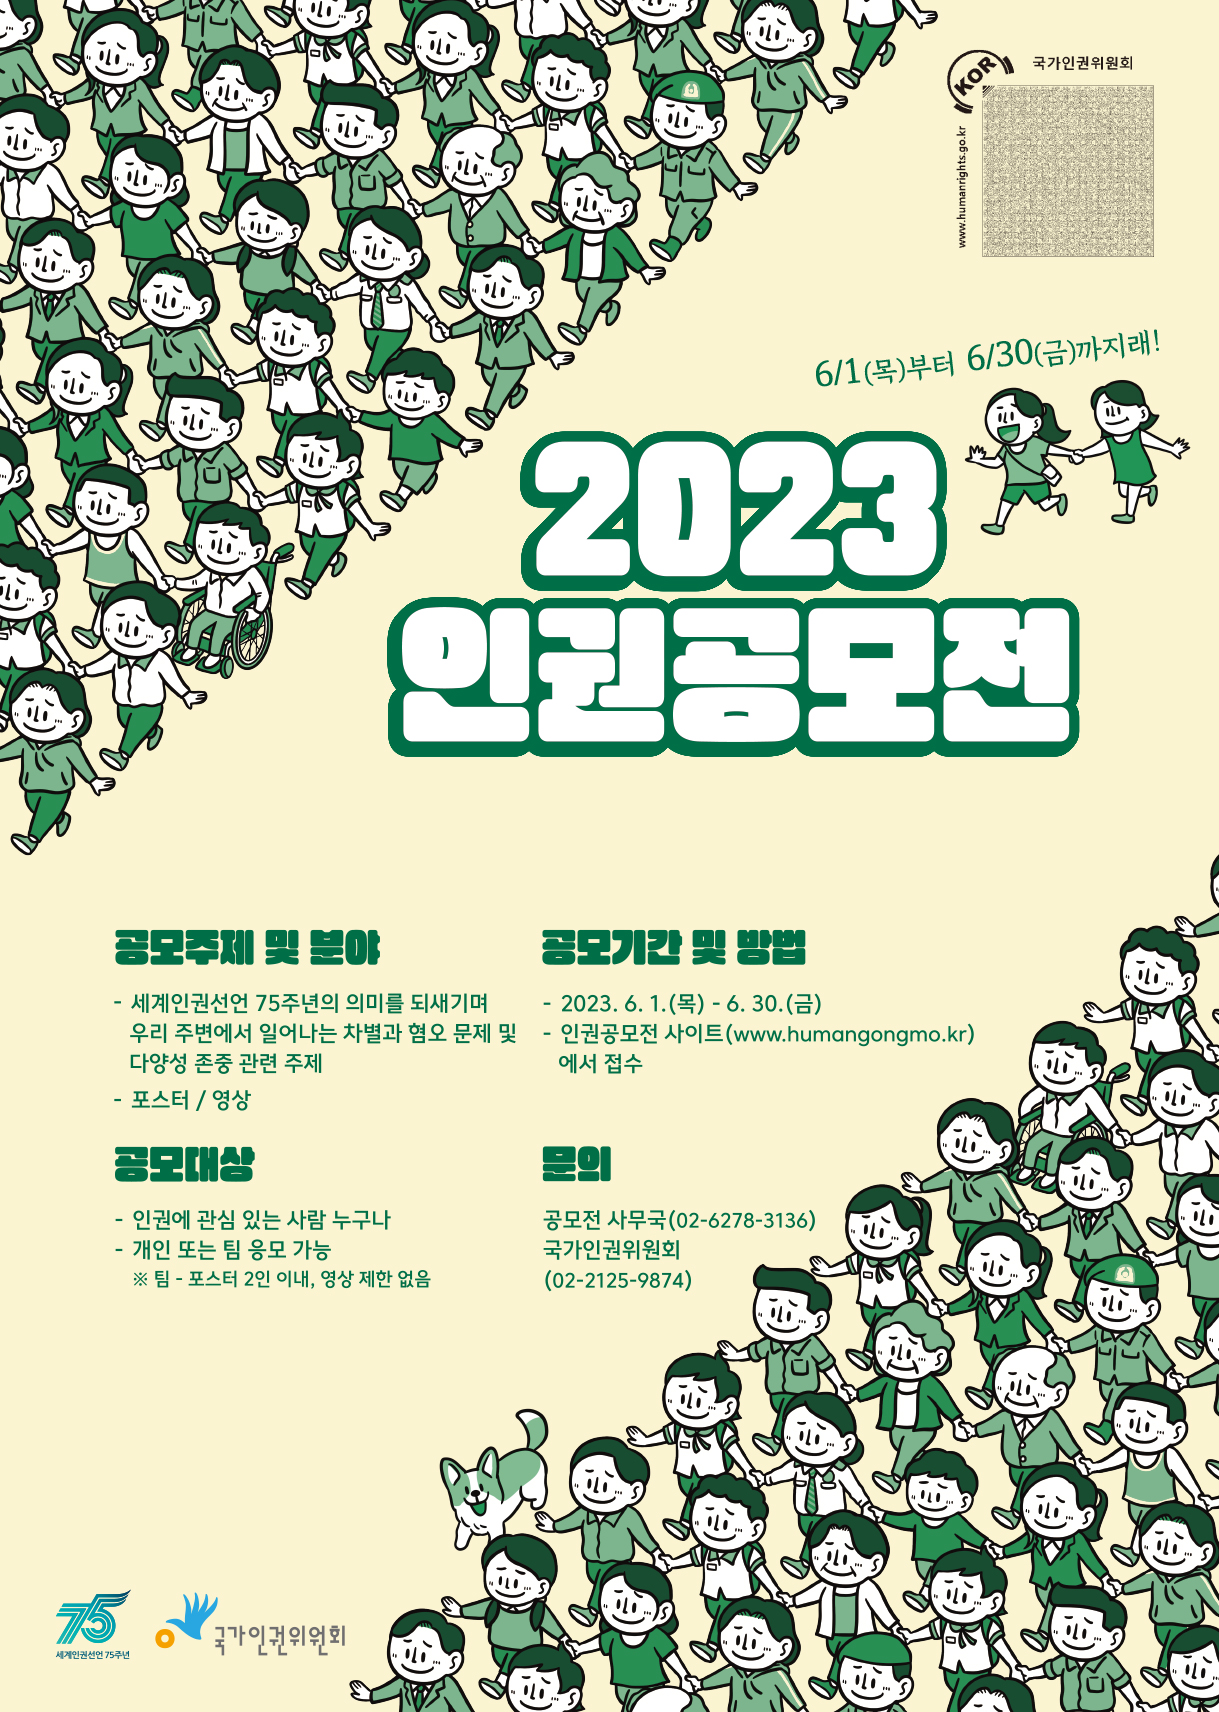  2023 인권공모전 포스터.jpg